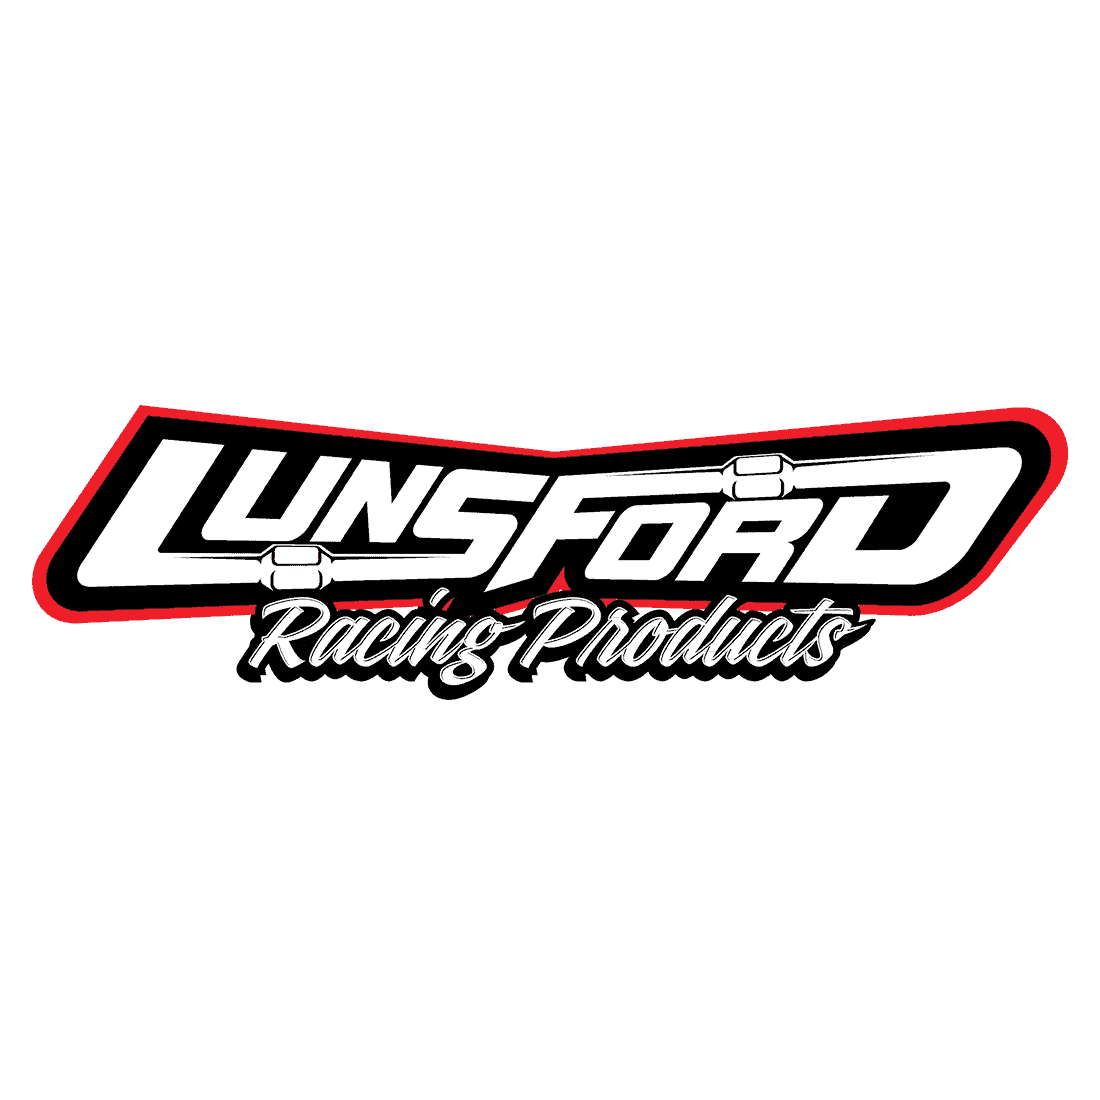 LUNSFORD